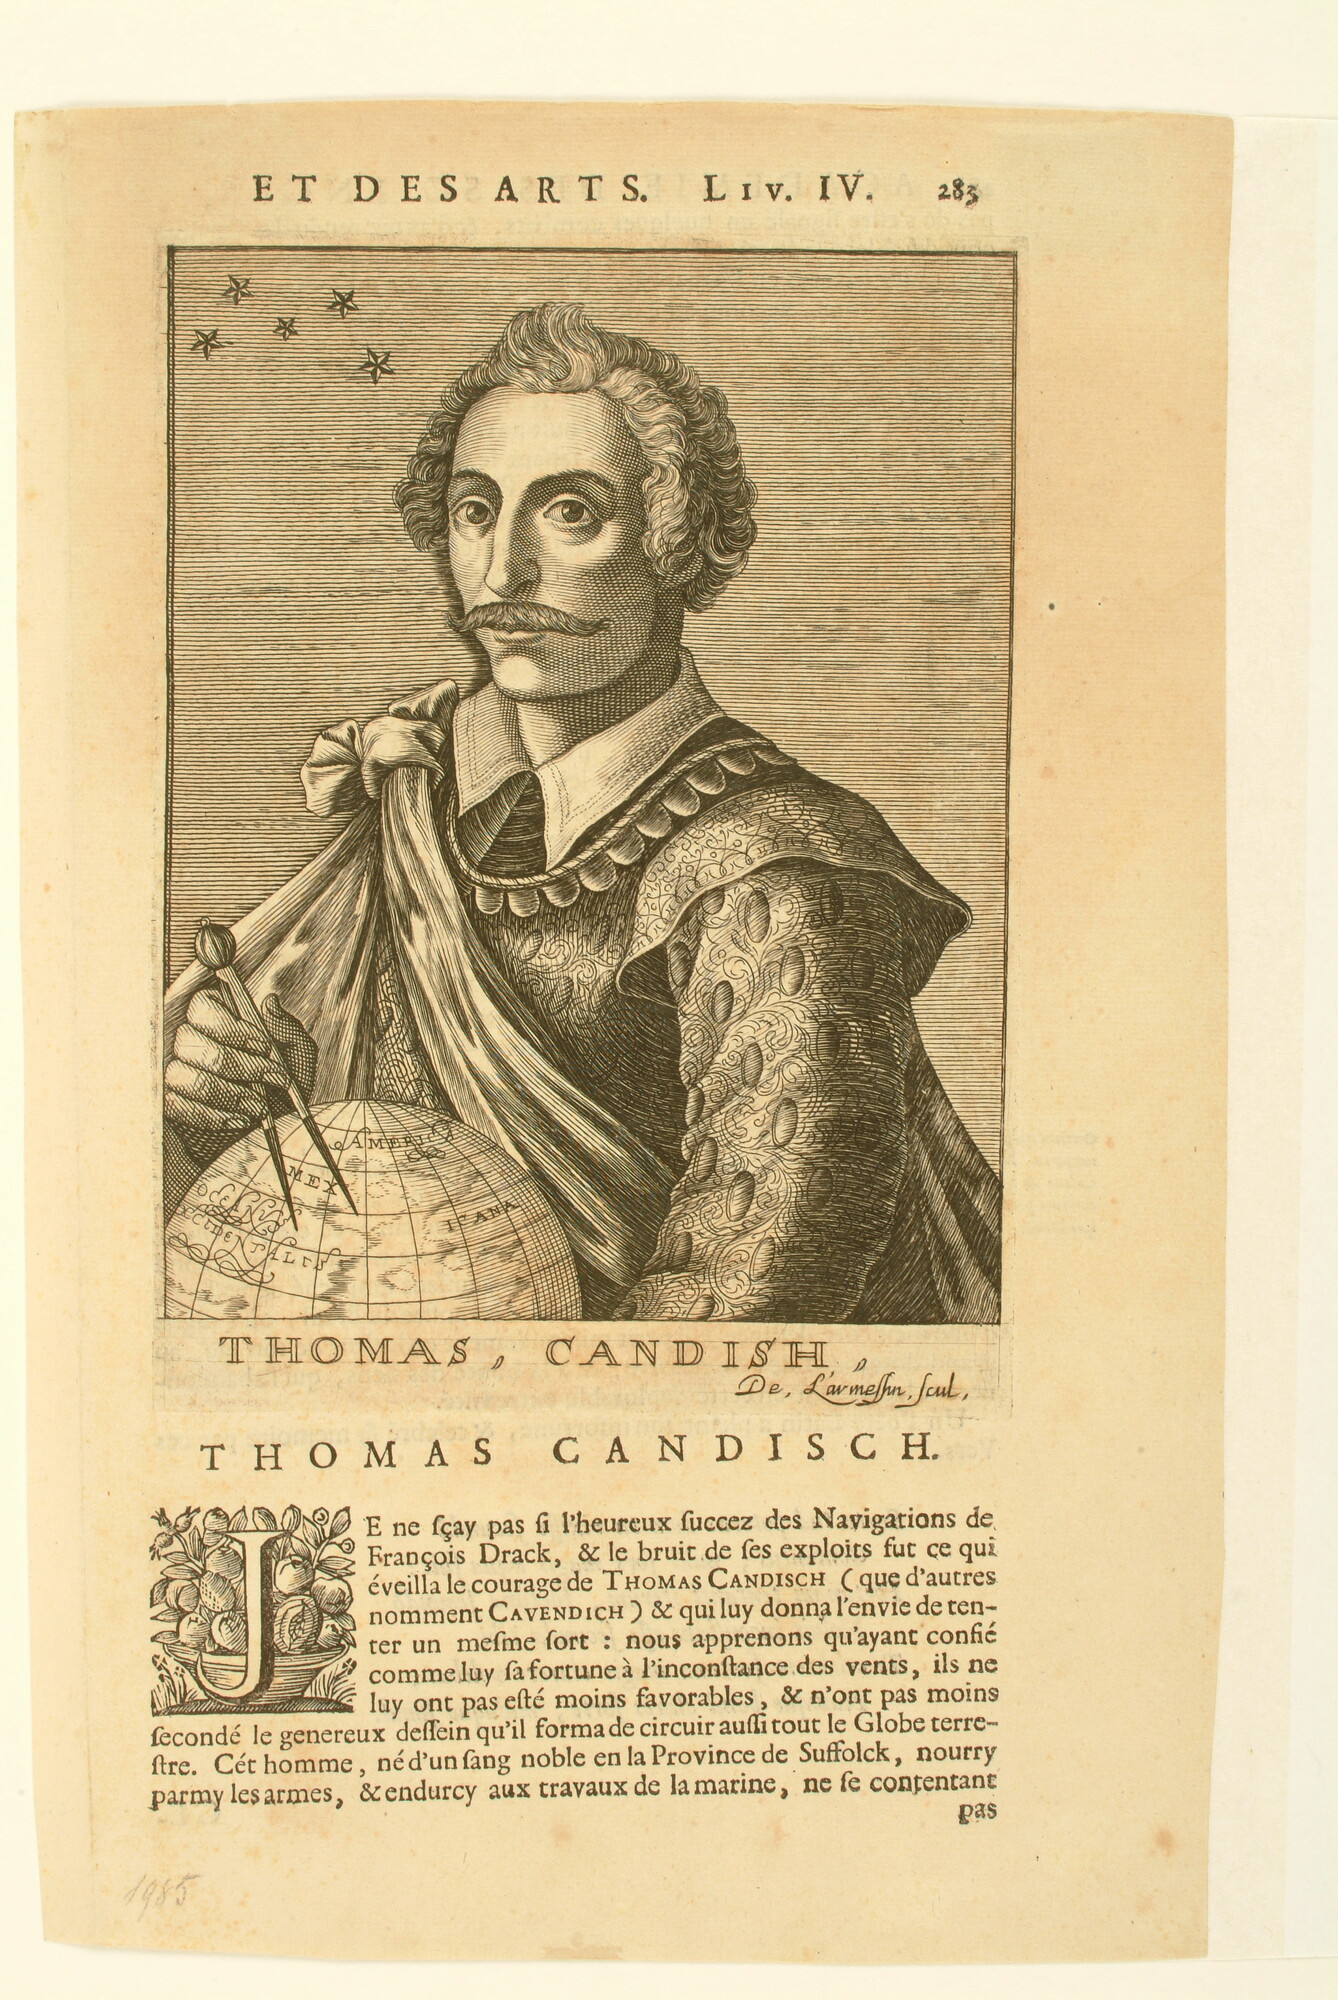 A.0075(130); Bladzijde uit boek met een portret van Thomas Candish; prent